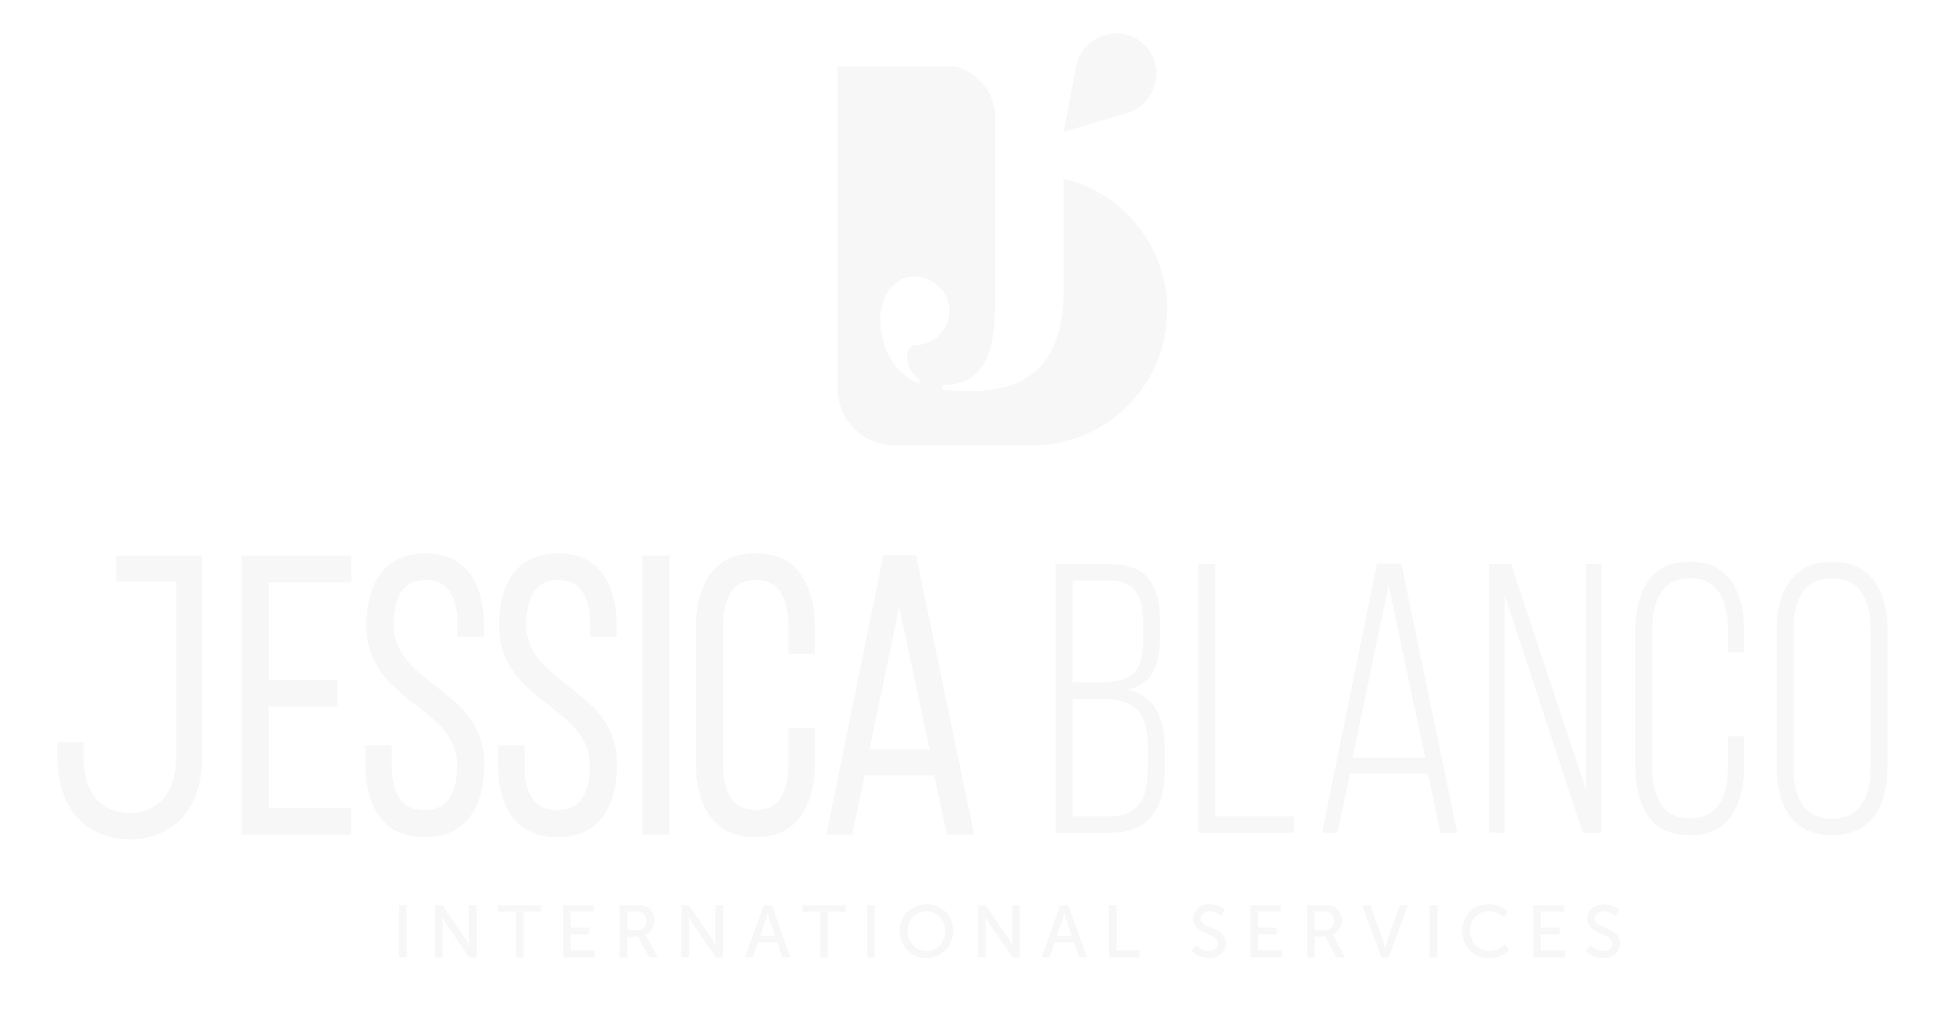 Jassica-Blanco-White